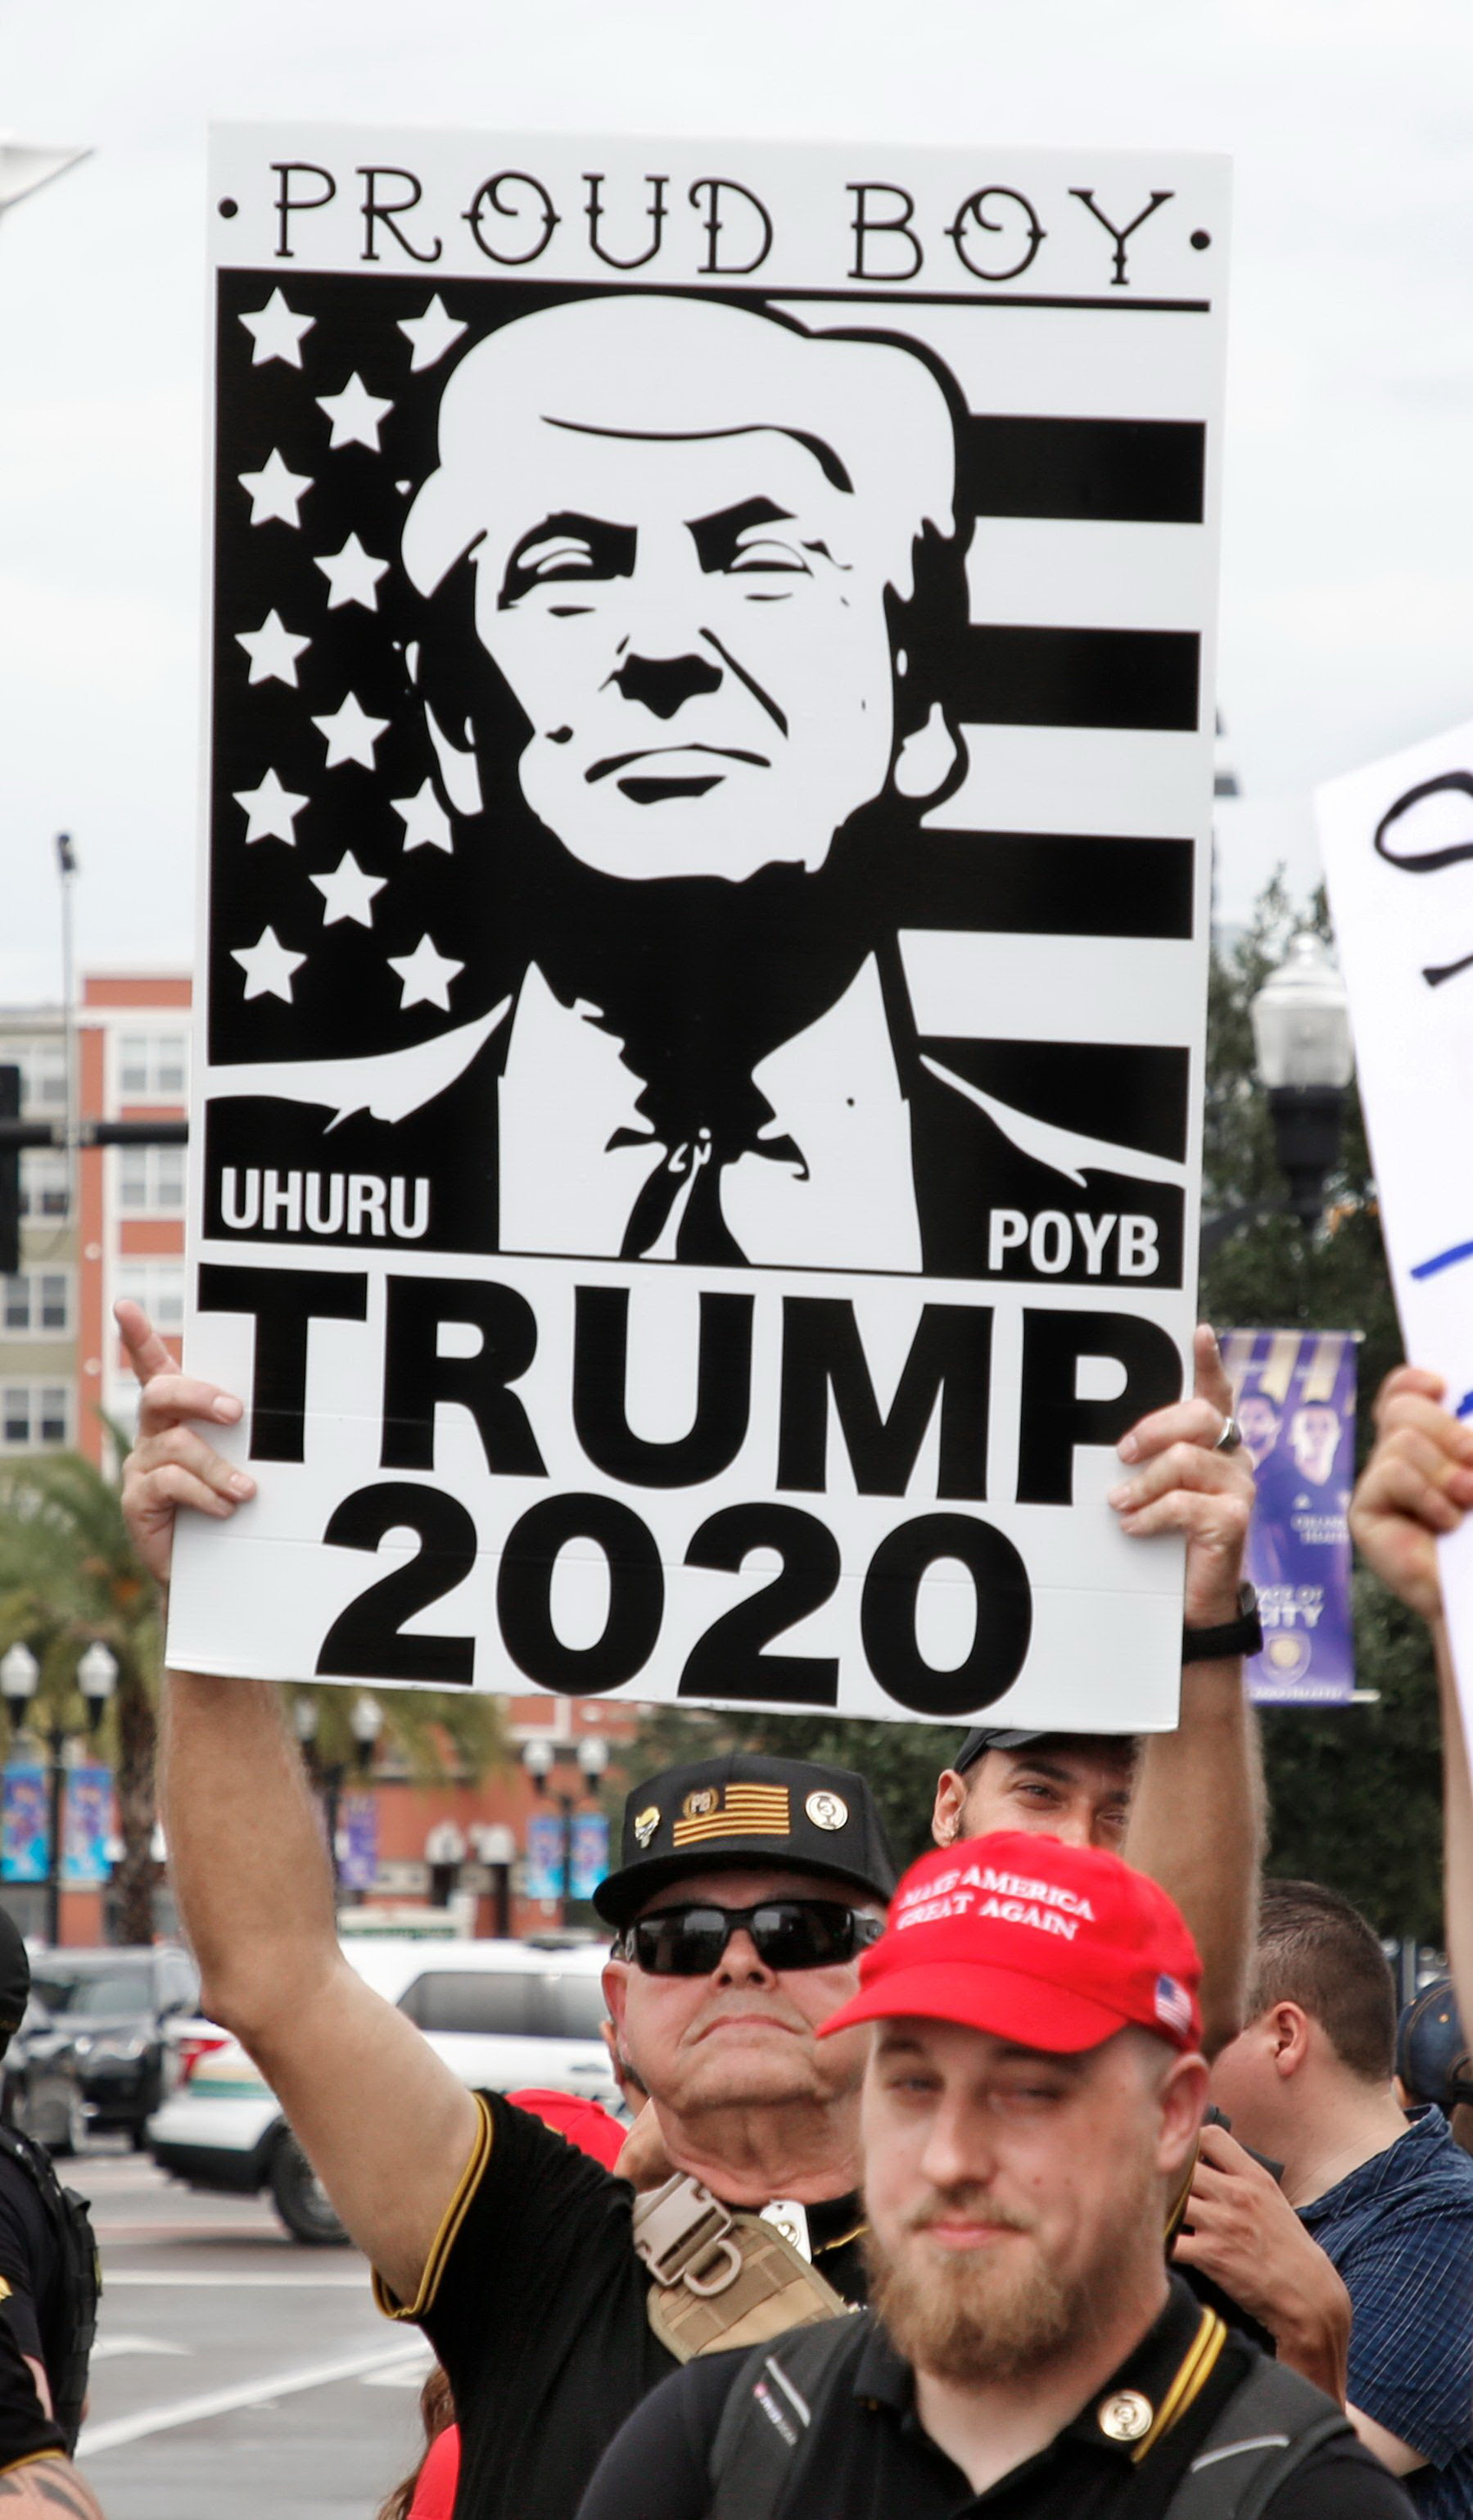 트럼프 지지자들이 올랜도 행사장 밖에서 피켓을 들고 있다. 트럼프 얼굴 위에 Proud Boy라고 썼다. [AFP=연합뉴스]